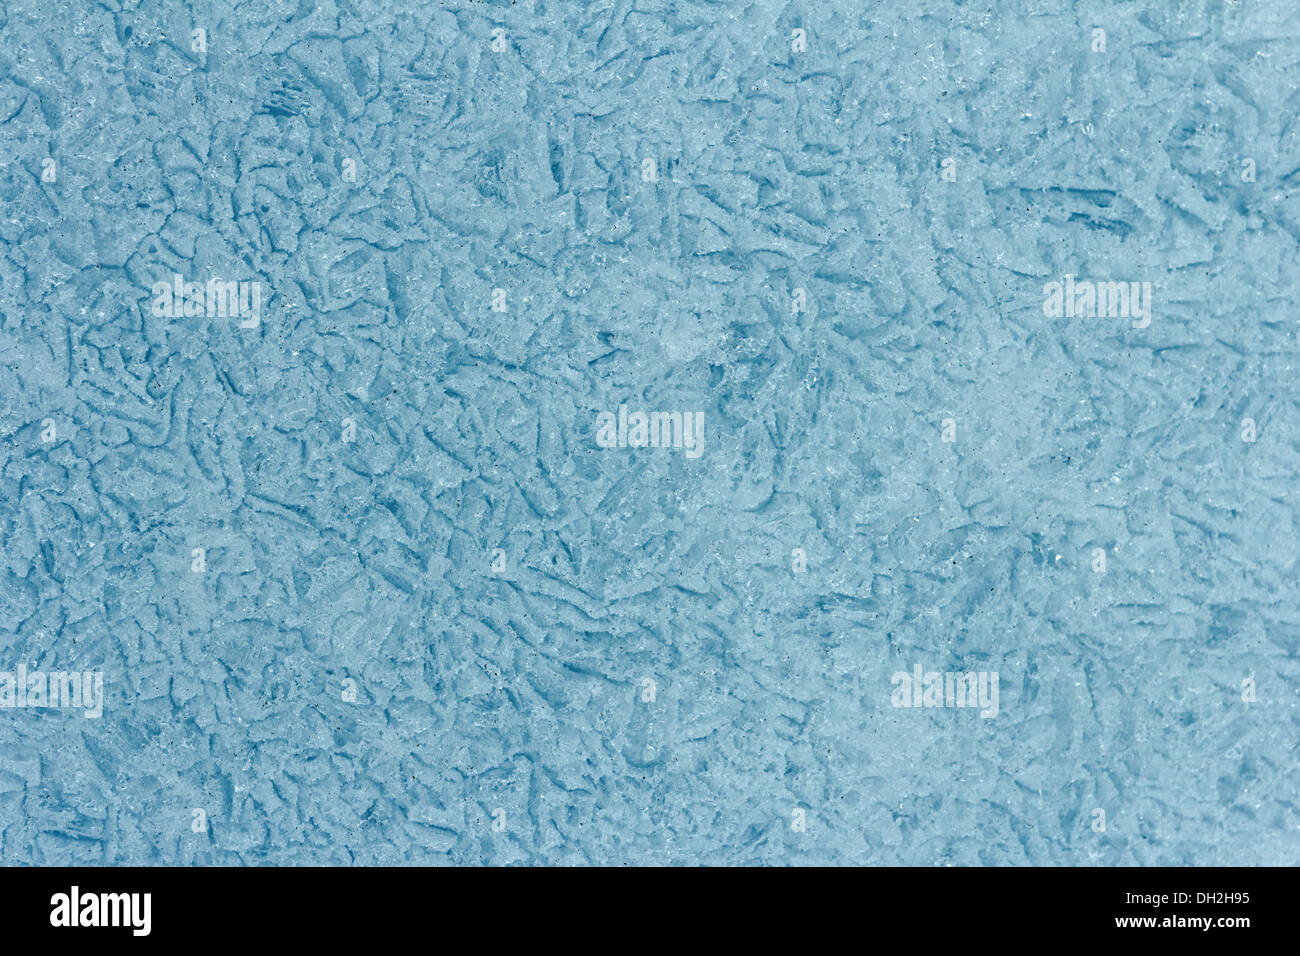 La texture de la glace de l'eau douce Banque D'Images